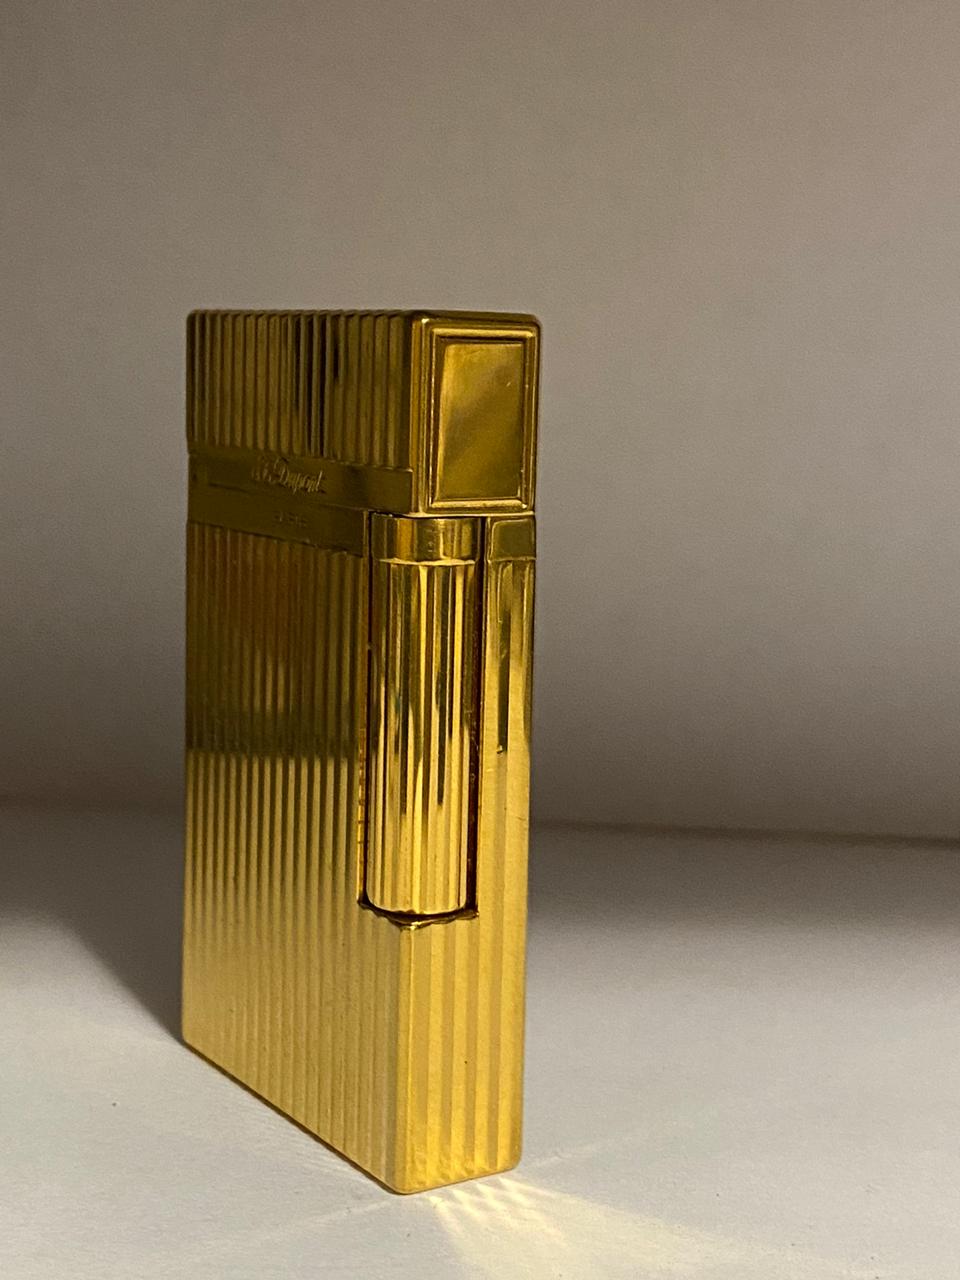 ST Dupont Gold Plated L2 Lighter